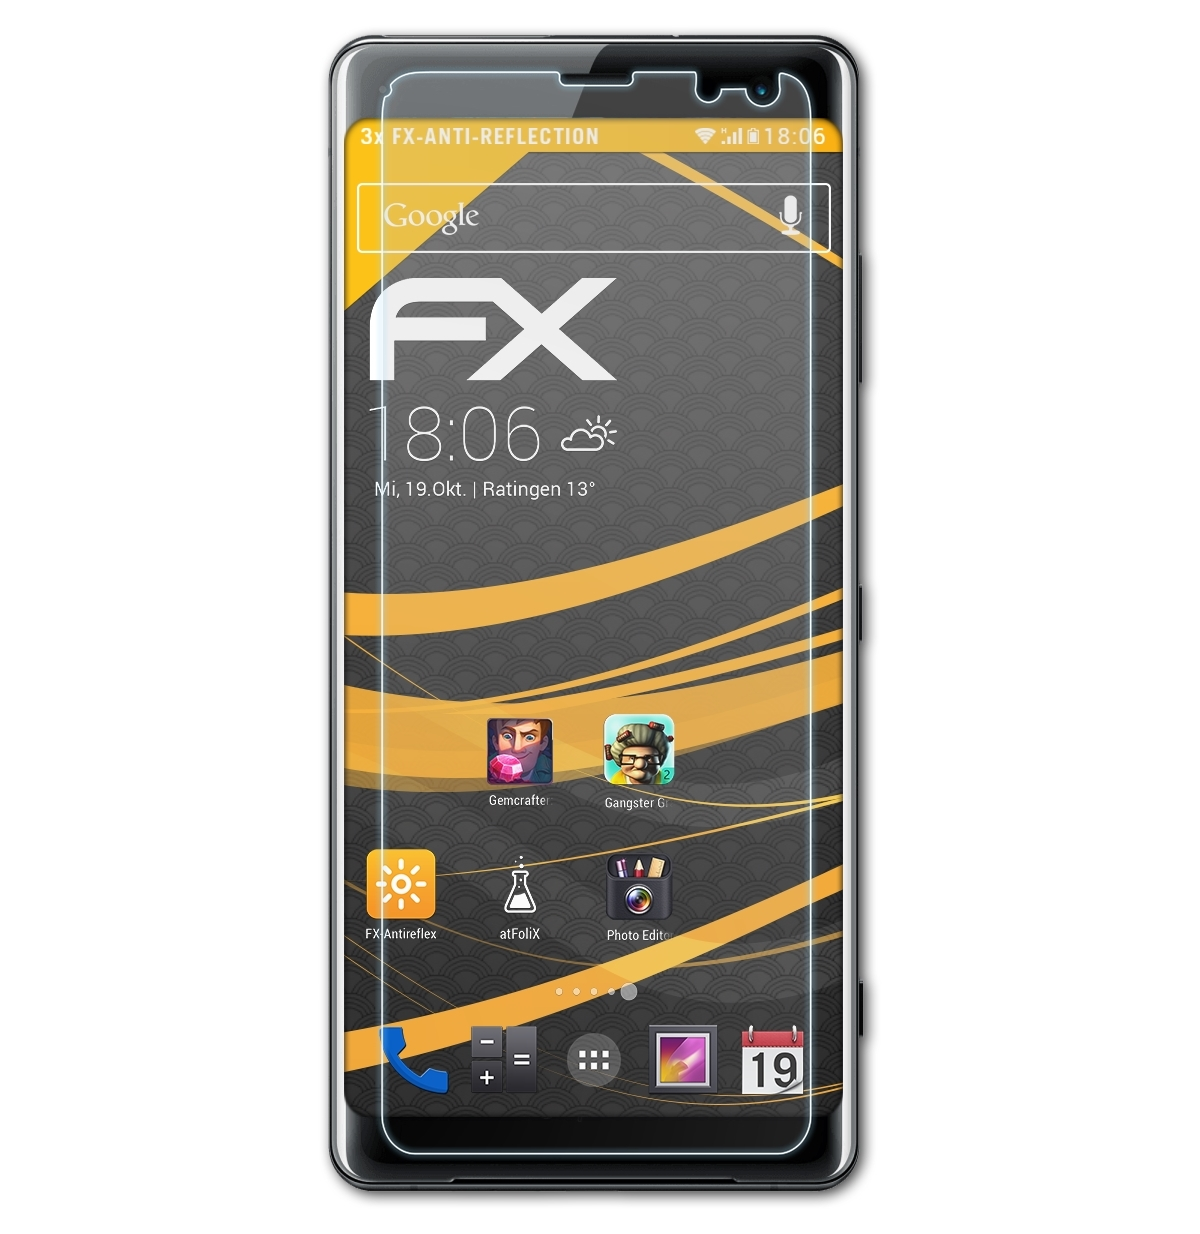 ATFOLIX FX-Antireflex Xperia Sony Displayschutz(für 3x XZ3)